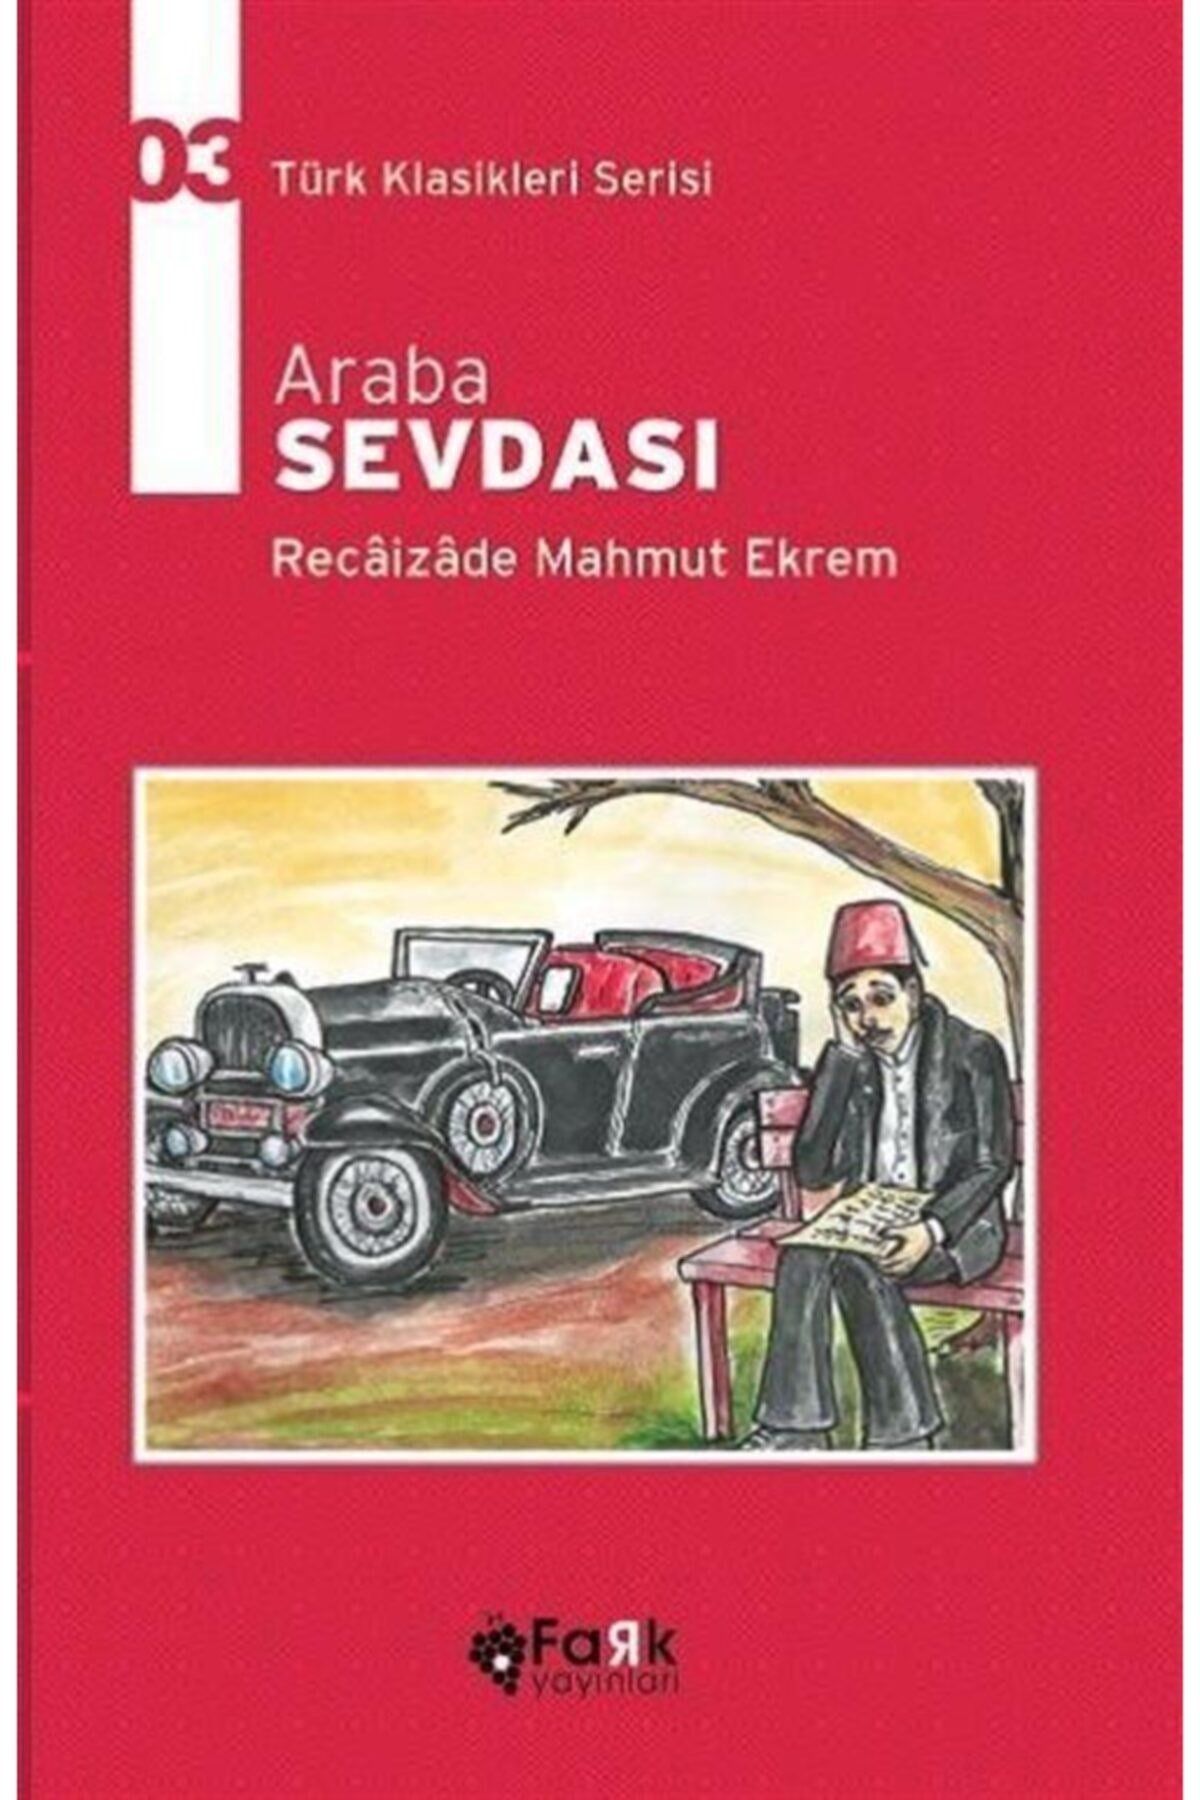 Araba Sevdası - Fark Yayınları - 9786052240106 - Türk Klasikleri